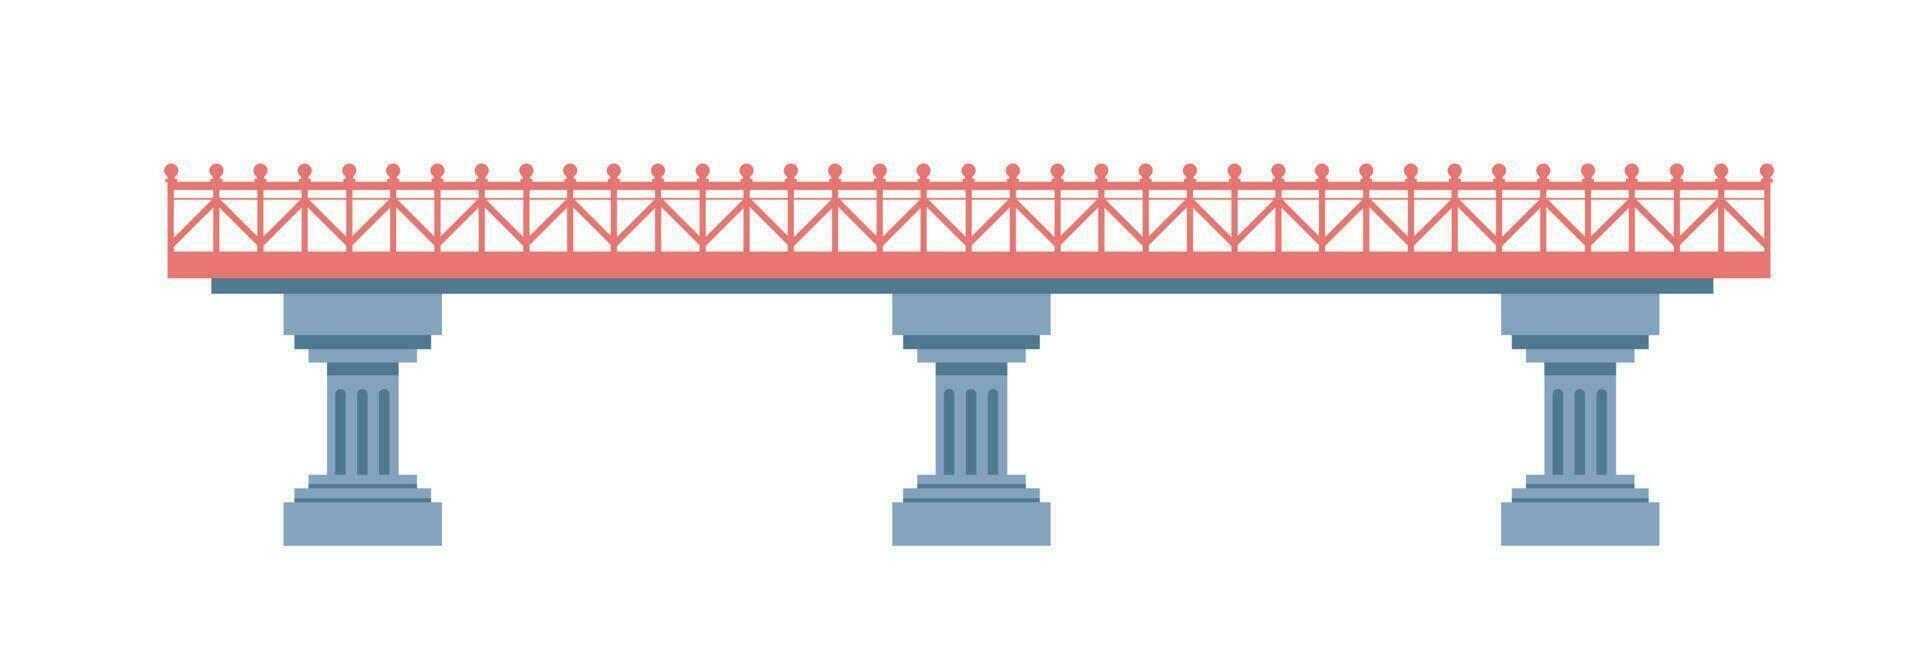 Facile pont avec piliers base et balustrade vecteur